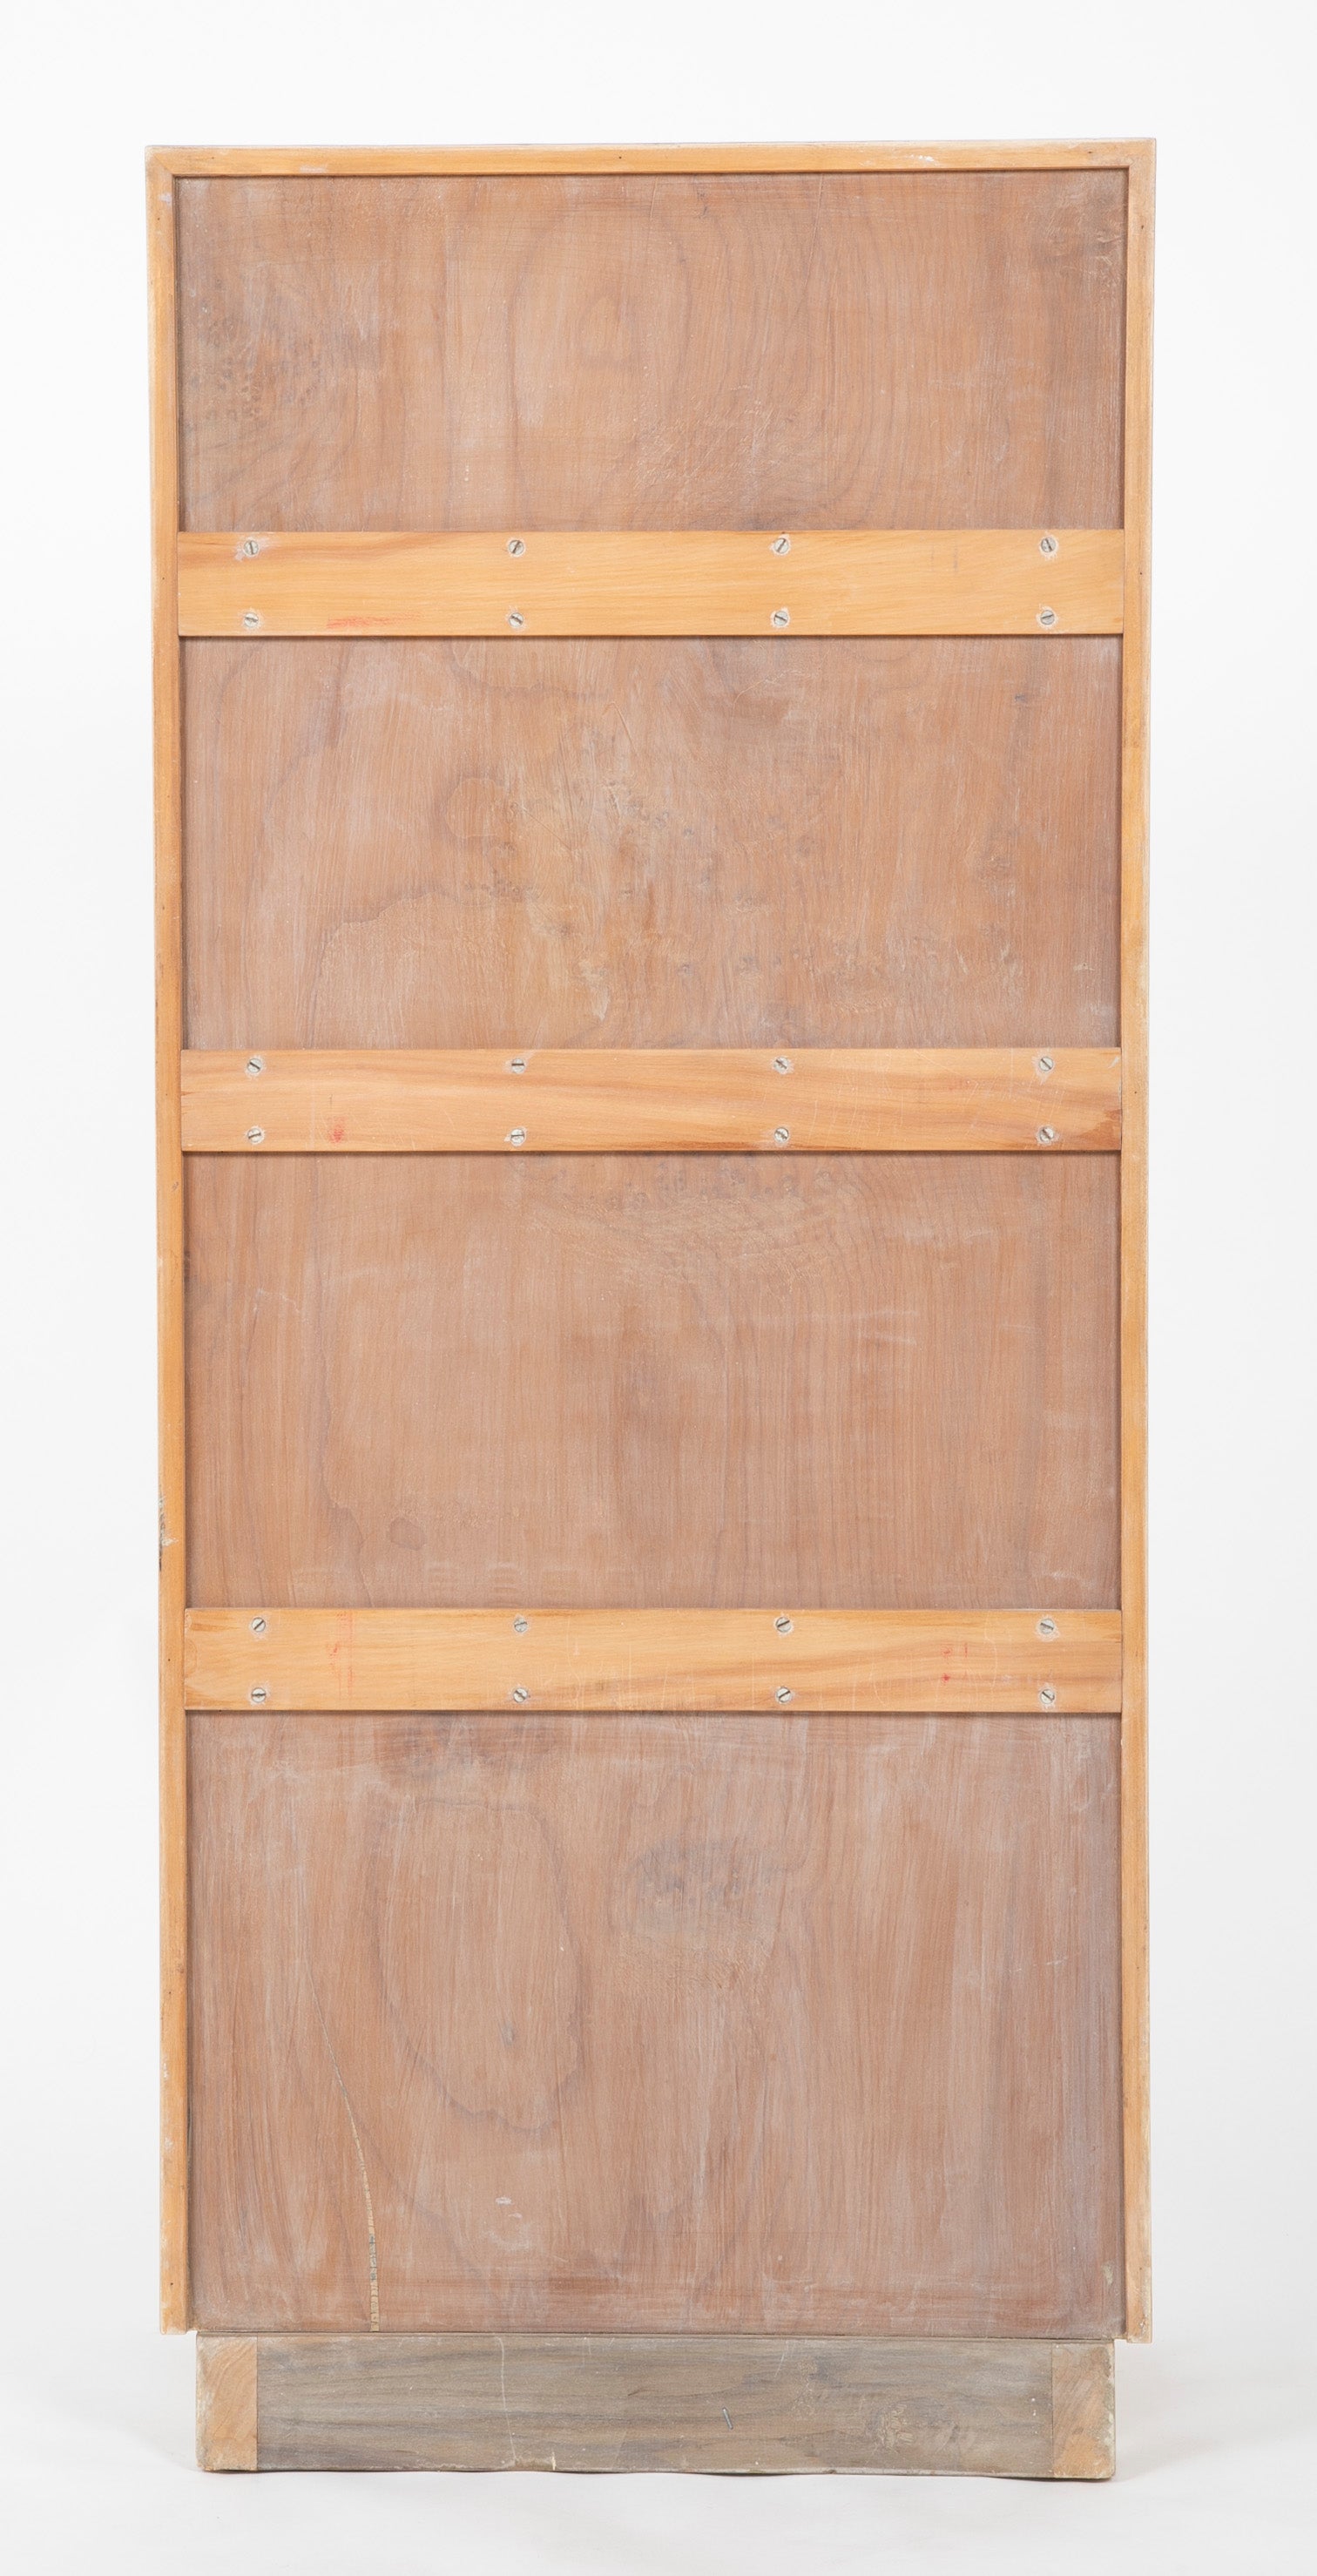 Bookshelf by Samuel Marx